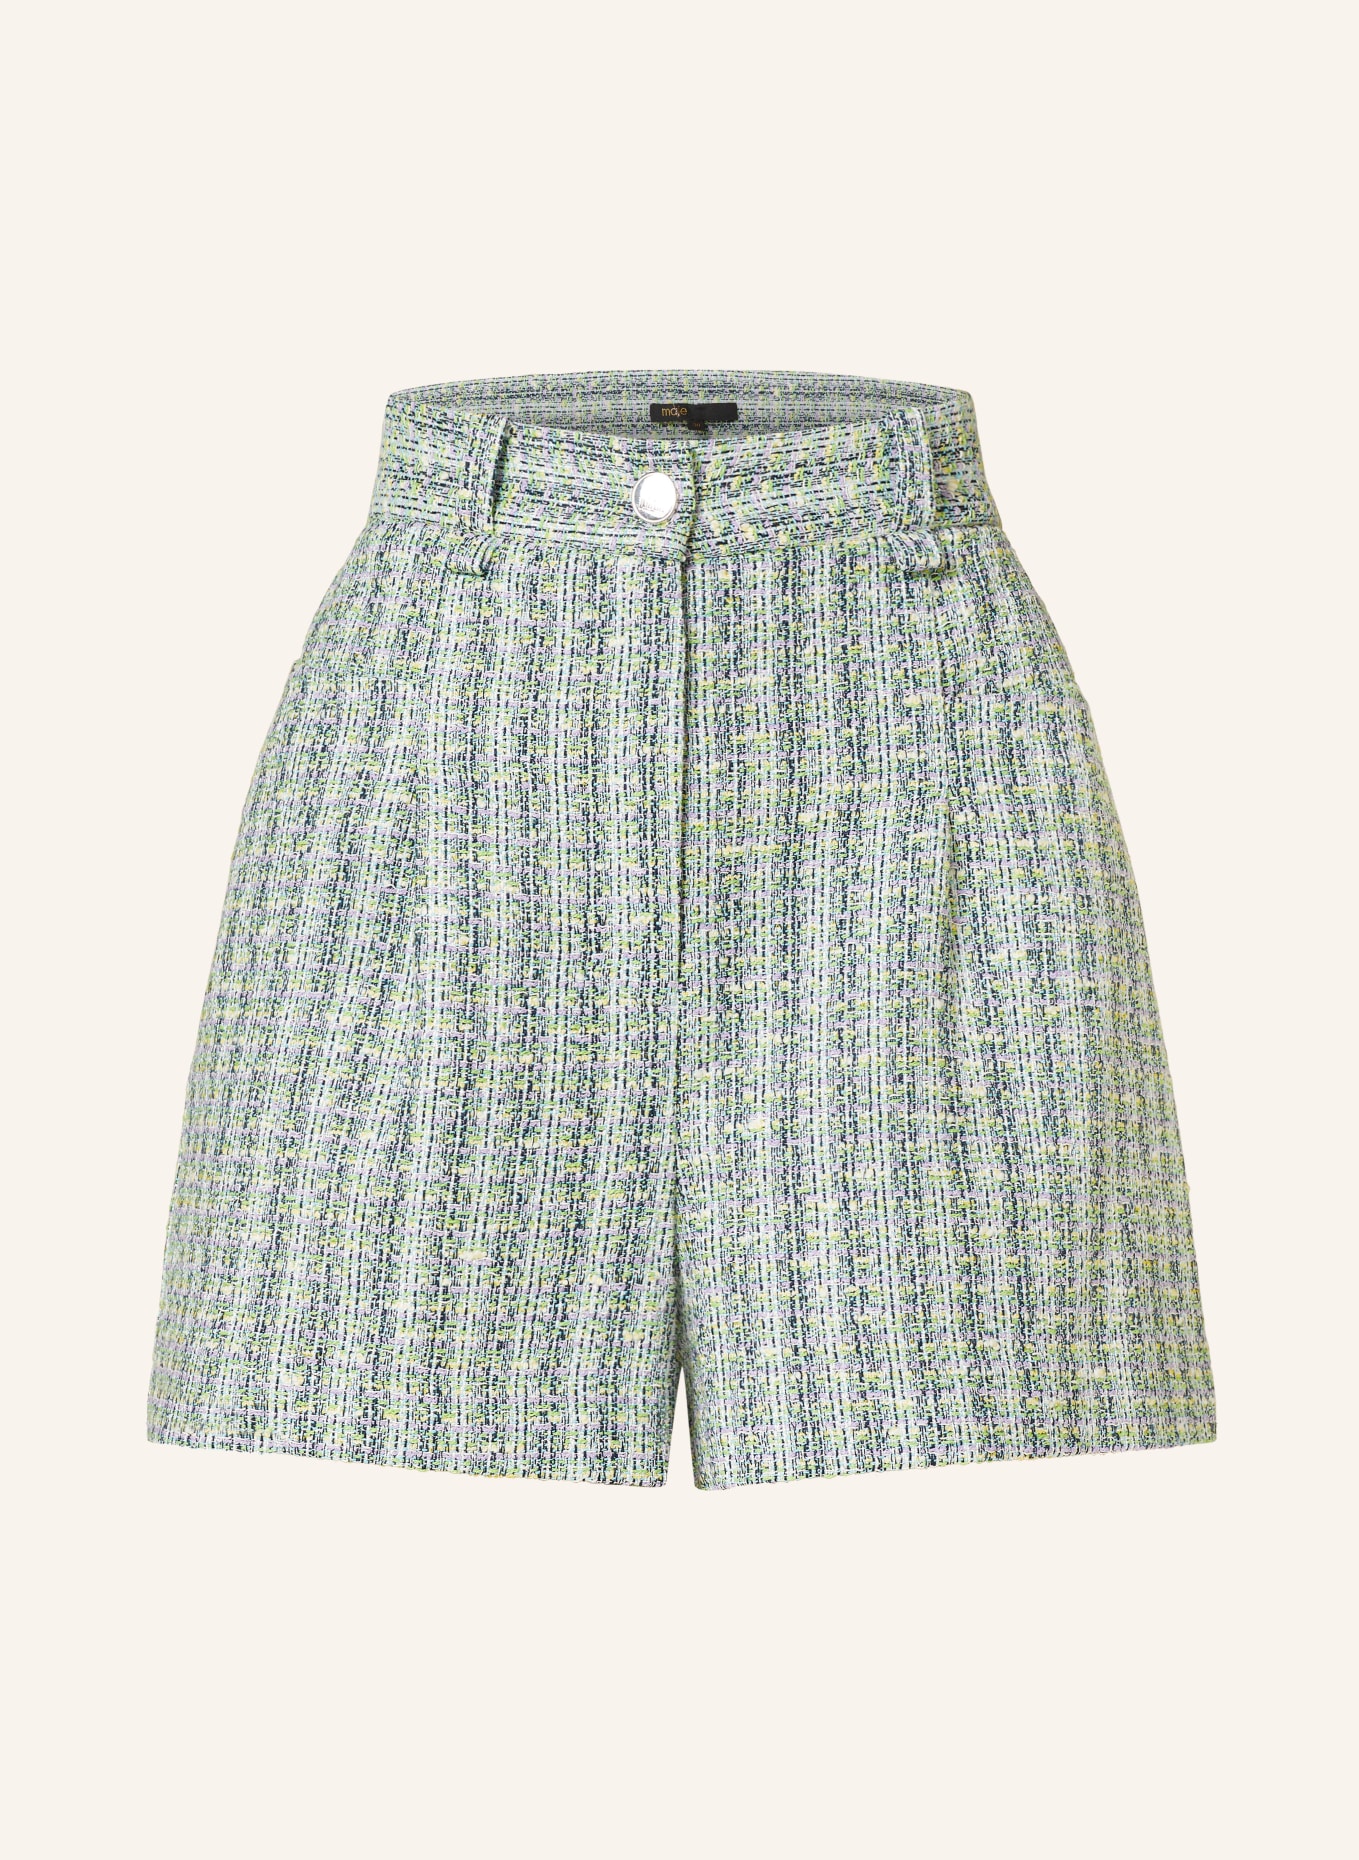 maje Tweed-Shorts mit Glitzergarn, Farbe: GRÜN/ HELLLILA/ HELLGELB (Bild 1)